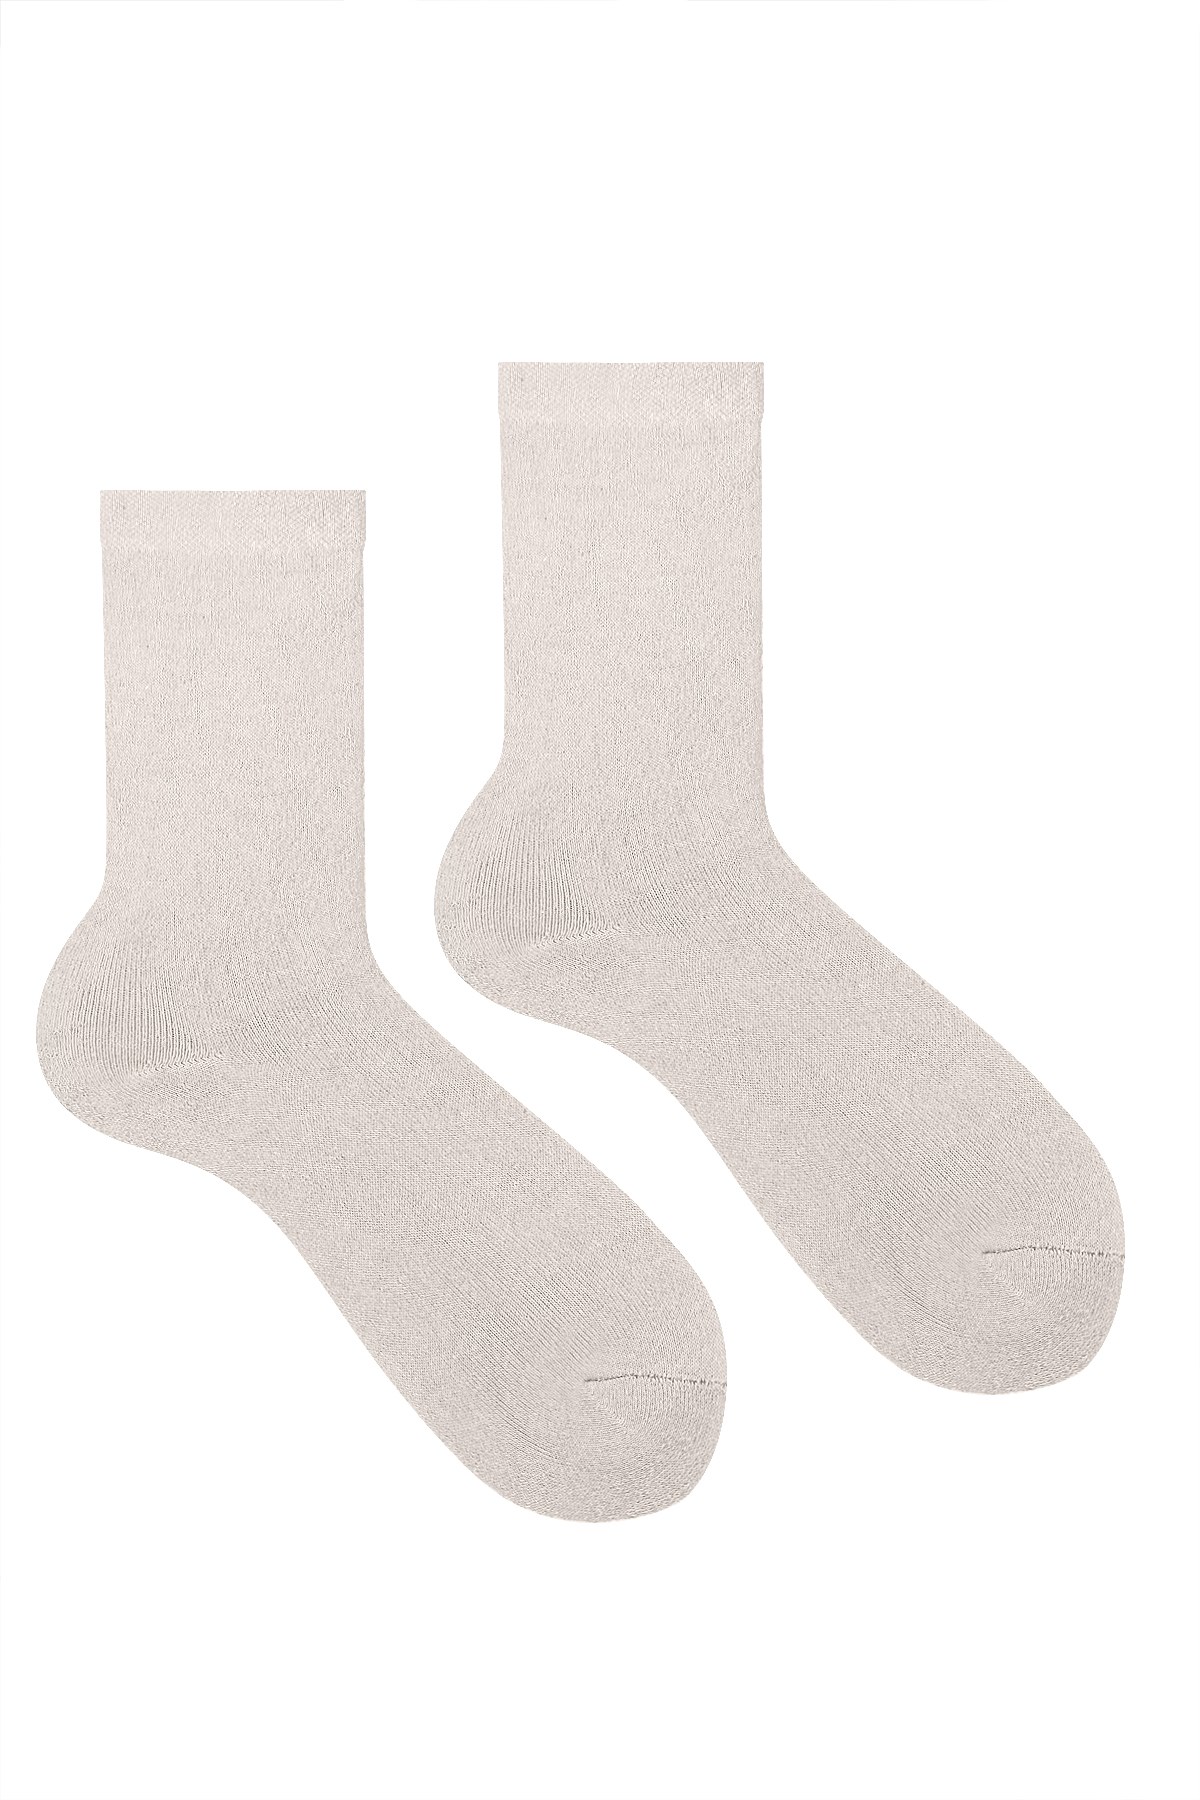 4 Çift Kadın Havlu Soket Çorap Kışlık Dayanıklı Topuk Ve Burun